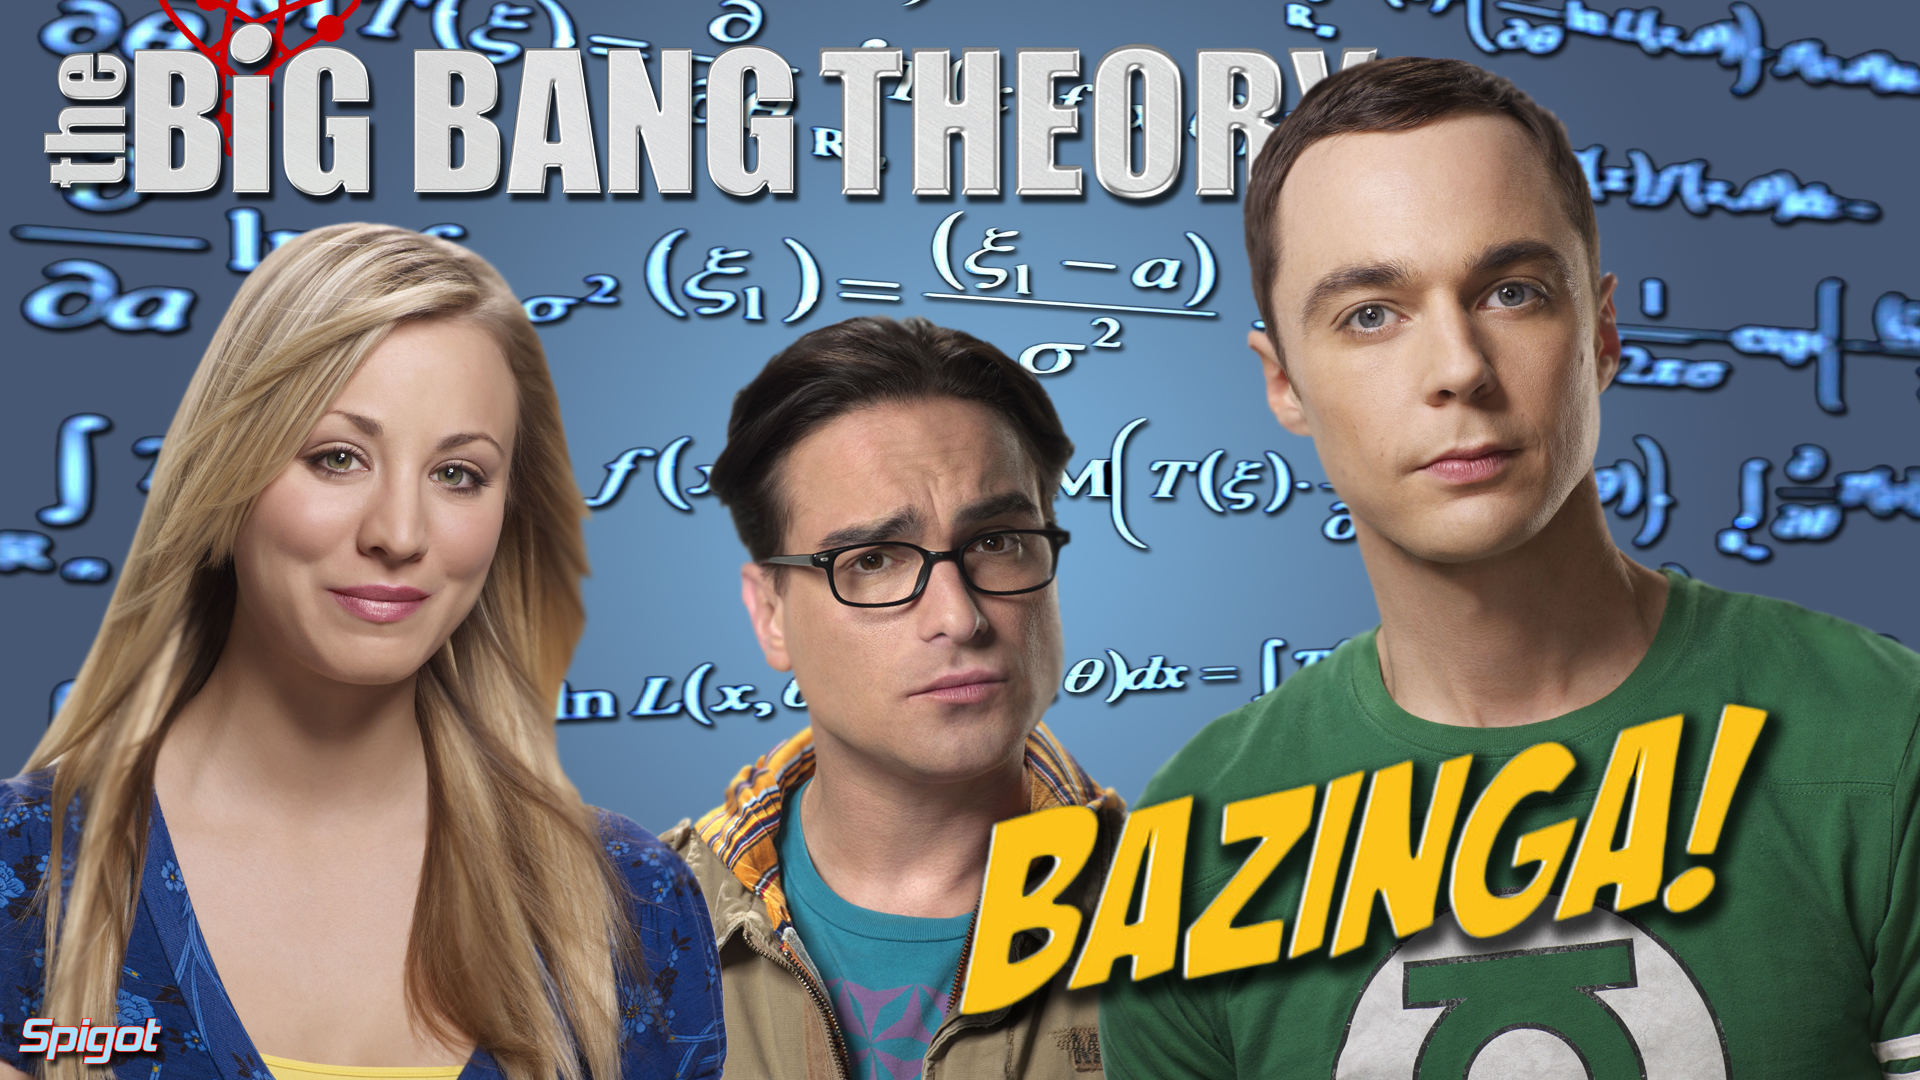 Big Bang Theory wallpaper  627441